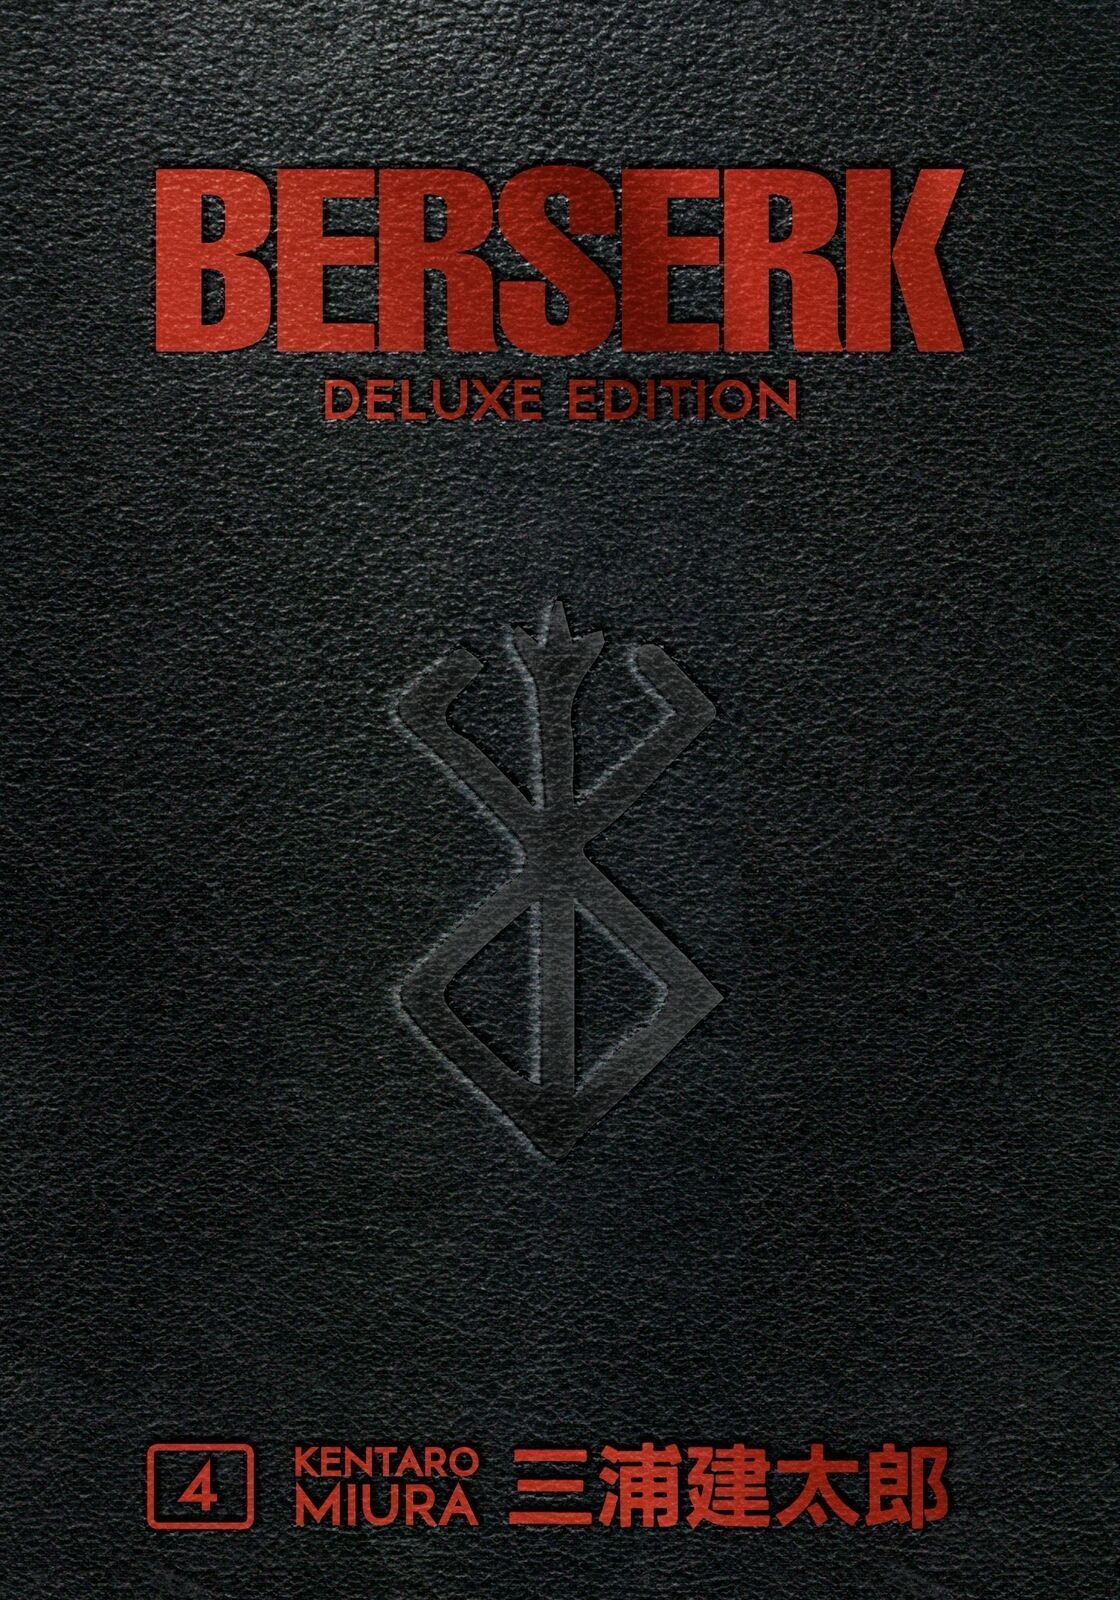 Berserk Deluxe Volume 4 by Kentaro Miura & Jason DeAngelis (Hardcover, 2020) - LV'S Global Media